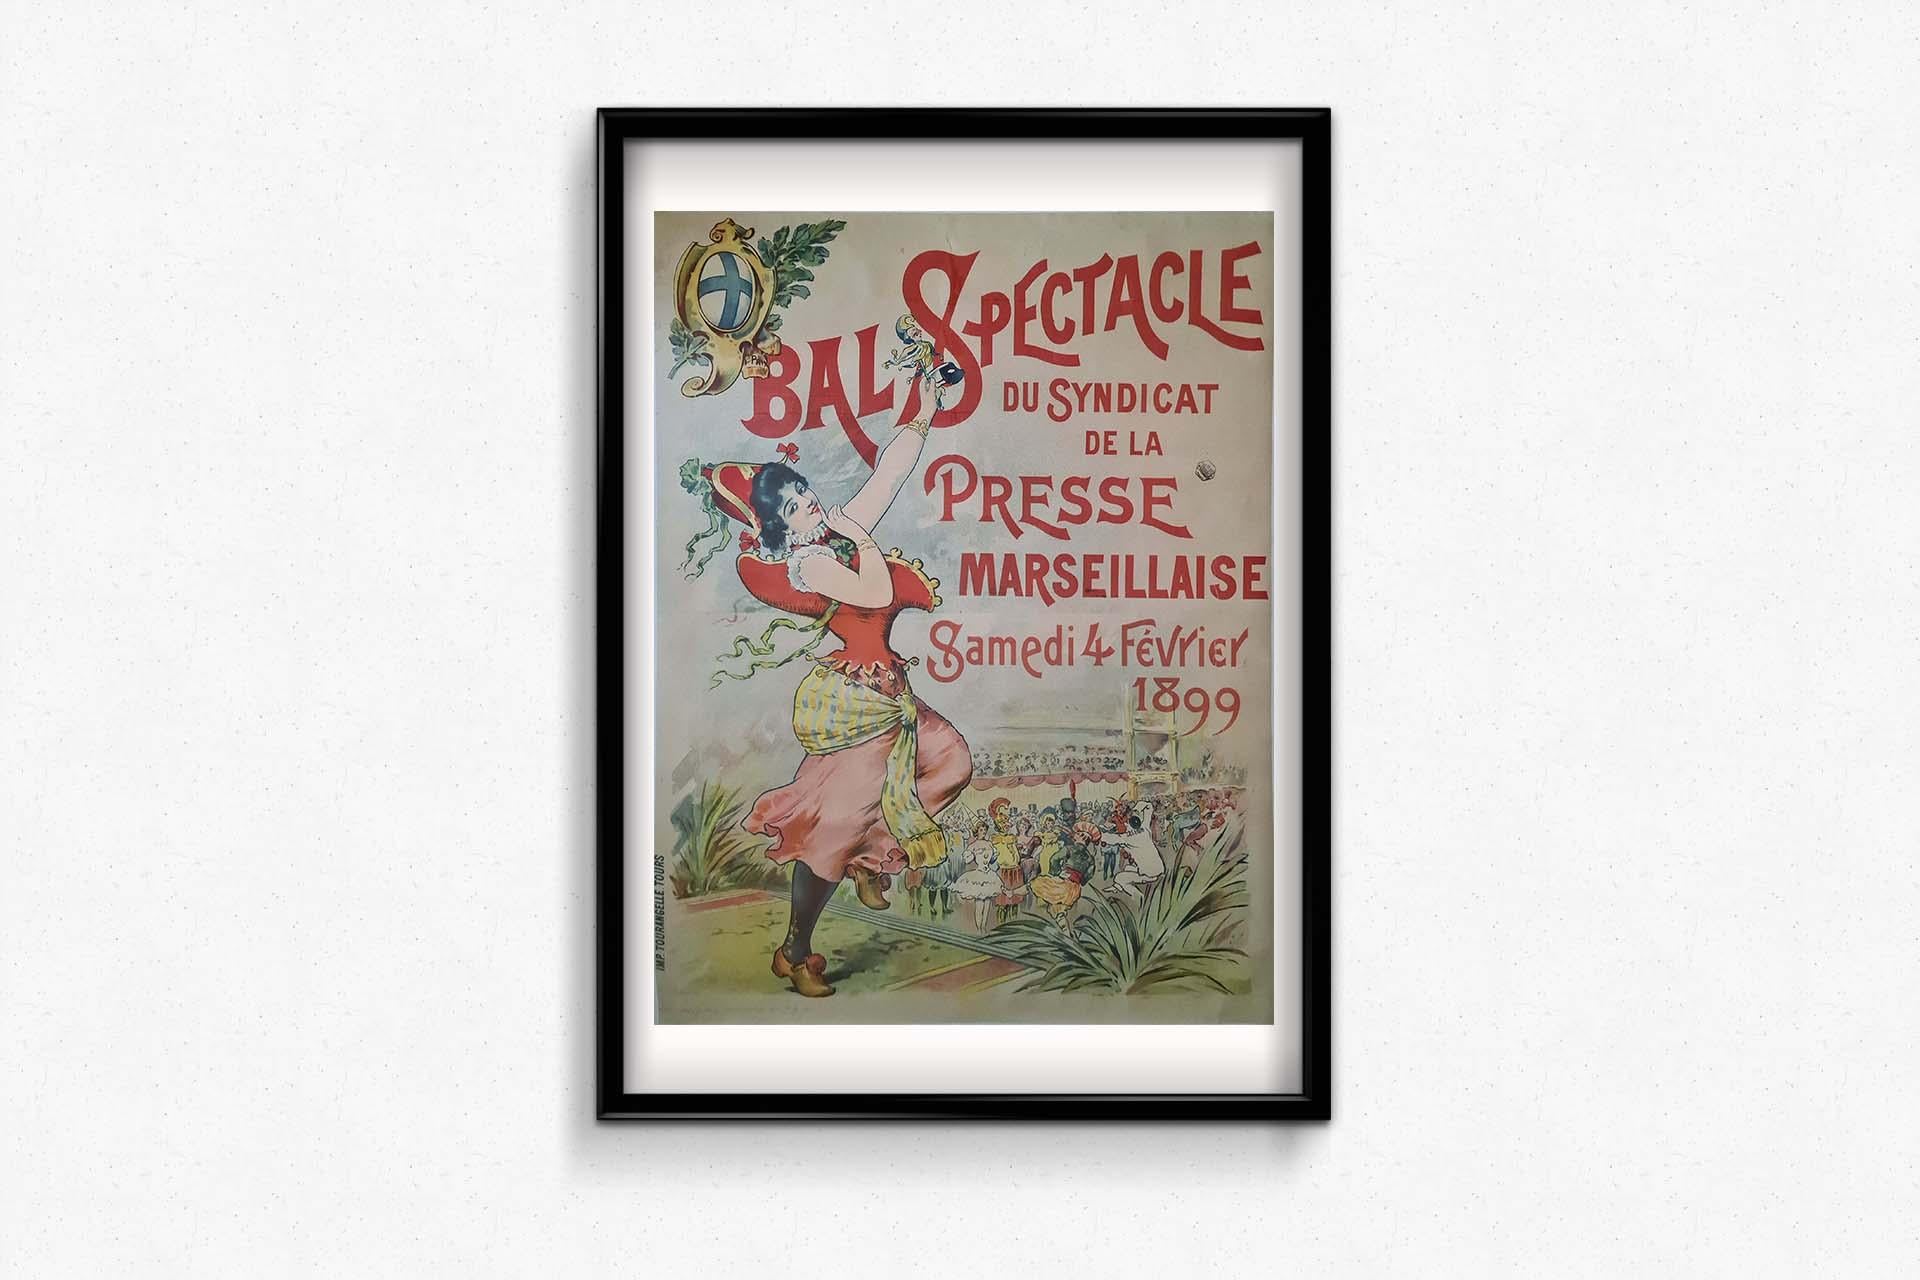 1899 Original poster for the Bal Spectacle du Syndicat de la Presse Marseillaise For Sale 1